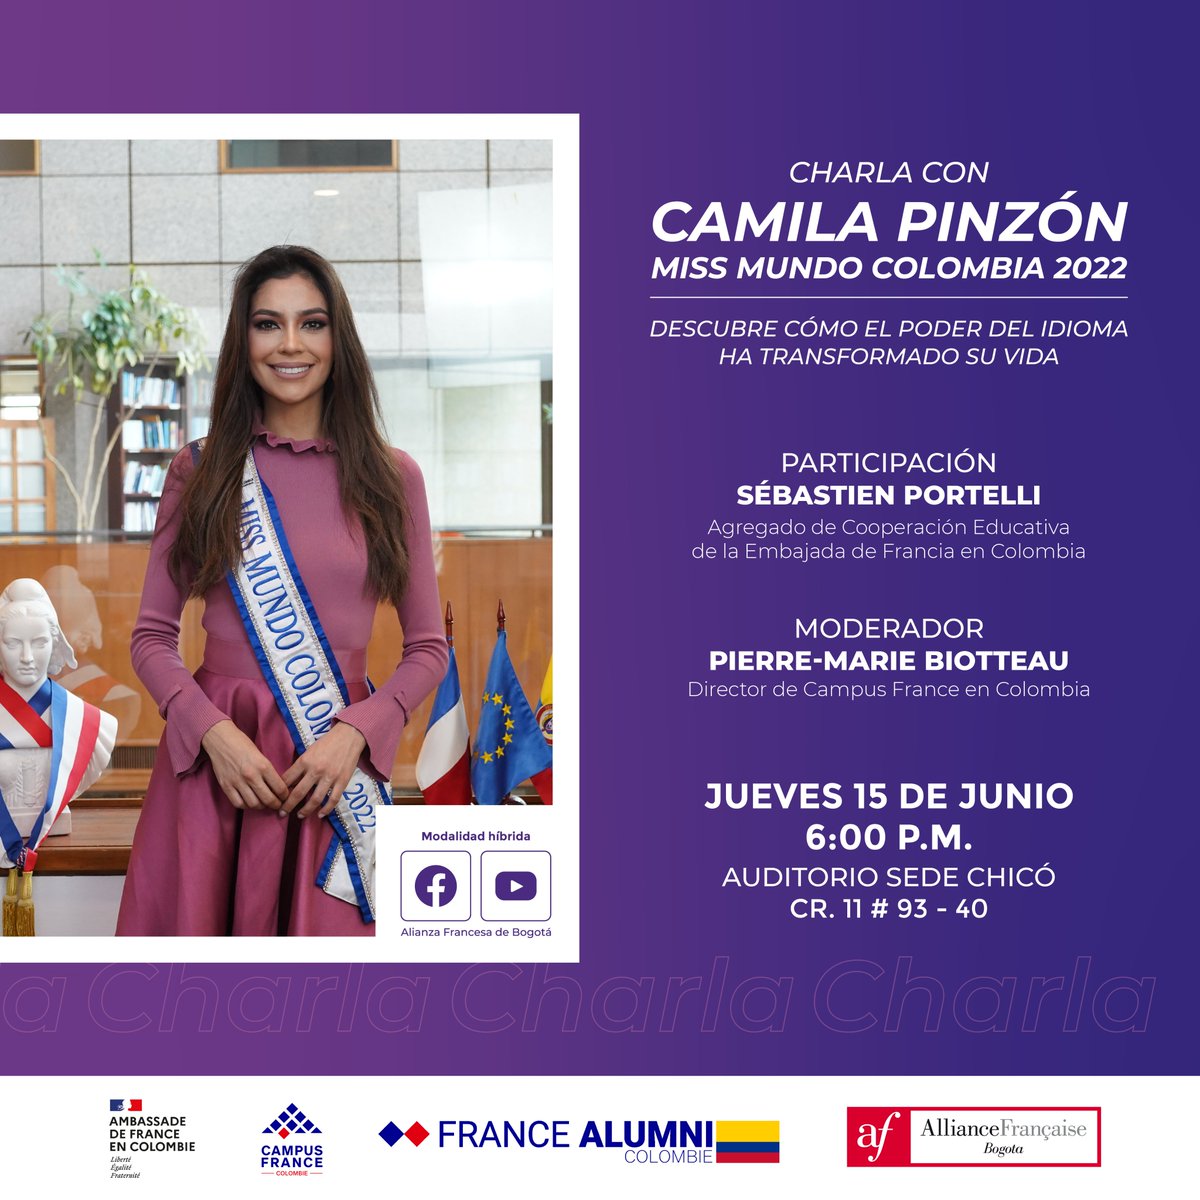 Descubre cómo el poder del idioma transformó la vida de Camila Pinzón, Miss Mundo Colombia 2022, abriéndole puertas en #Francia y el mundo Únete y déjate inspirar por su historia de éxito. 🗓 15 de junio - 6 p.m. 📍Cr. 11 # 93 - 40 🤳🏻 REGISTRO: bit.ly/3oTLJdF